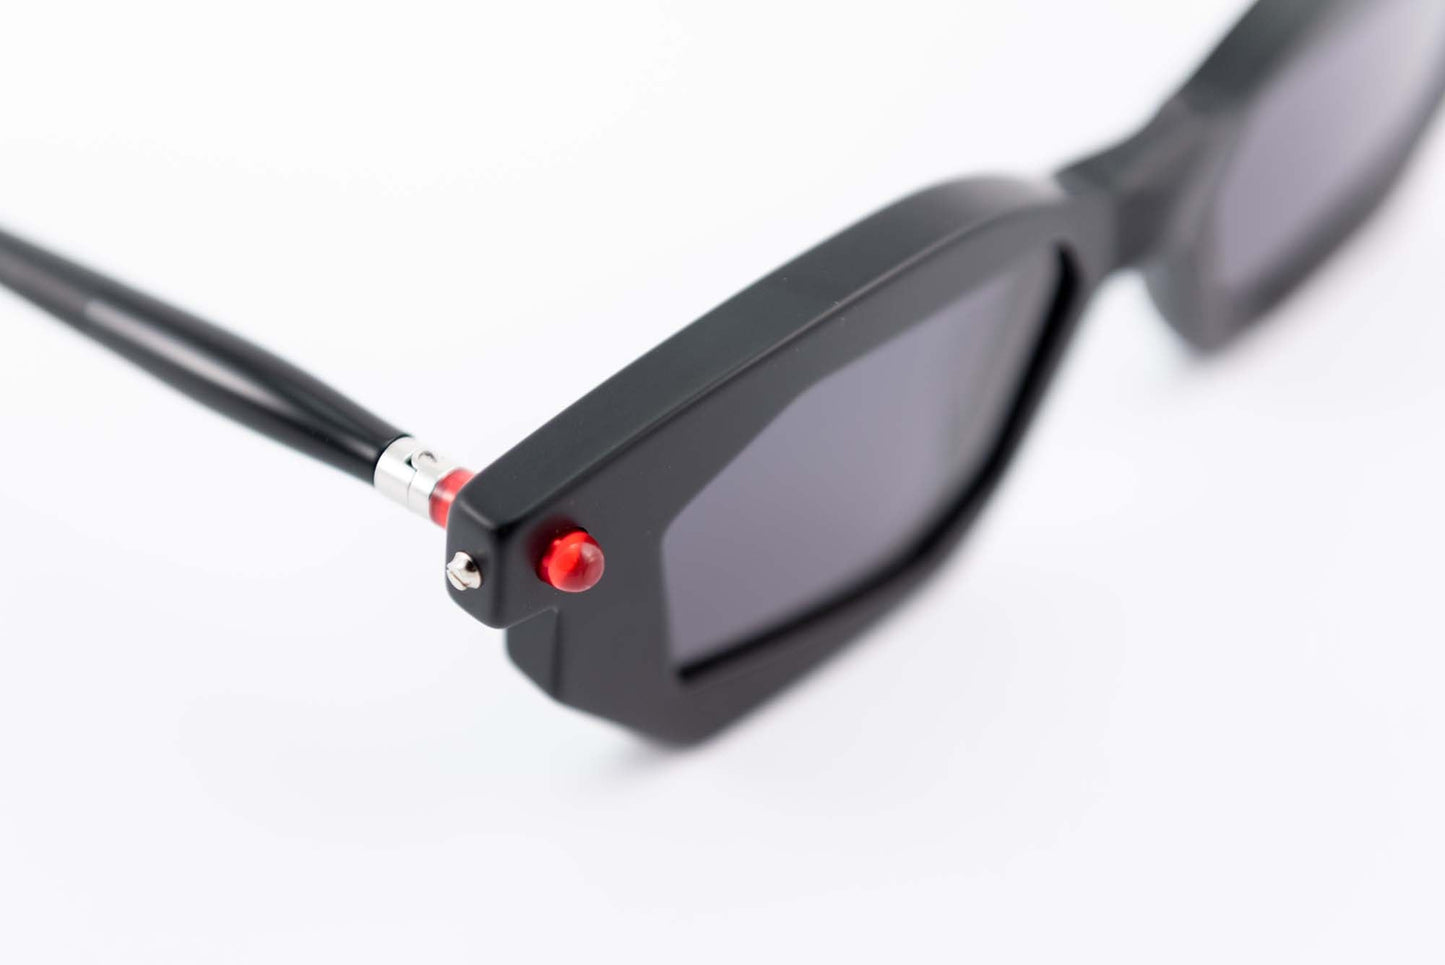 Kuboraum Occhiali da sole Nero / Acetato / Squadrato Kuboraum Maske P14 BMR: occhiale in acetato nero poligonale da sole